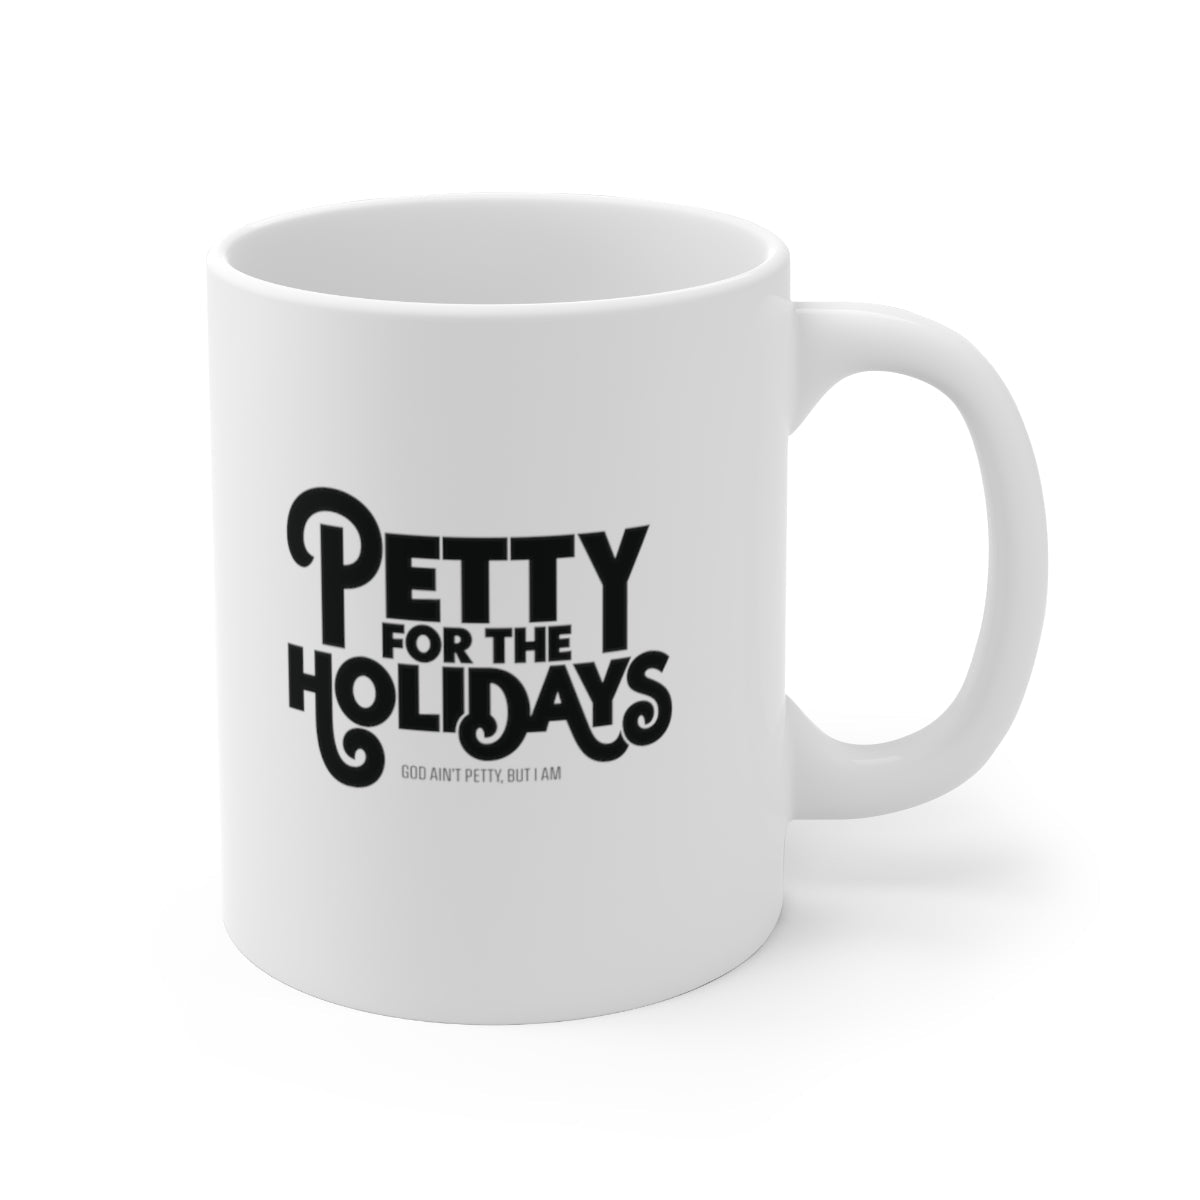 Petty for the Holidays Mug 11oz (White/Black)-Mug-The Original God Ain't Petty But I Am